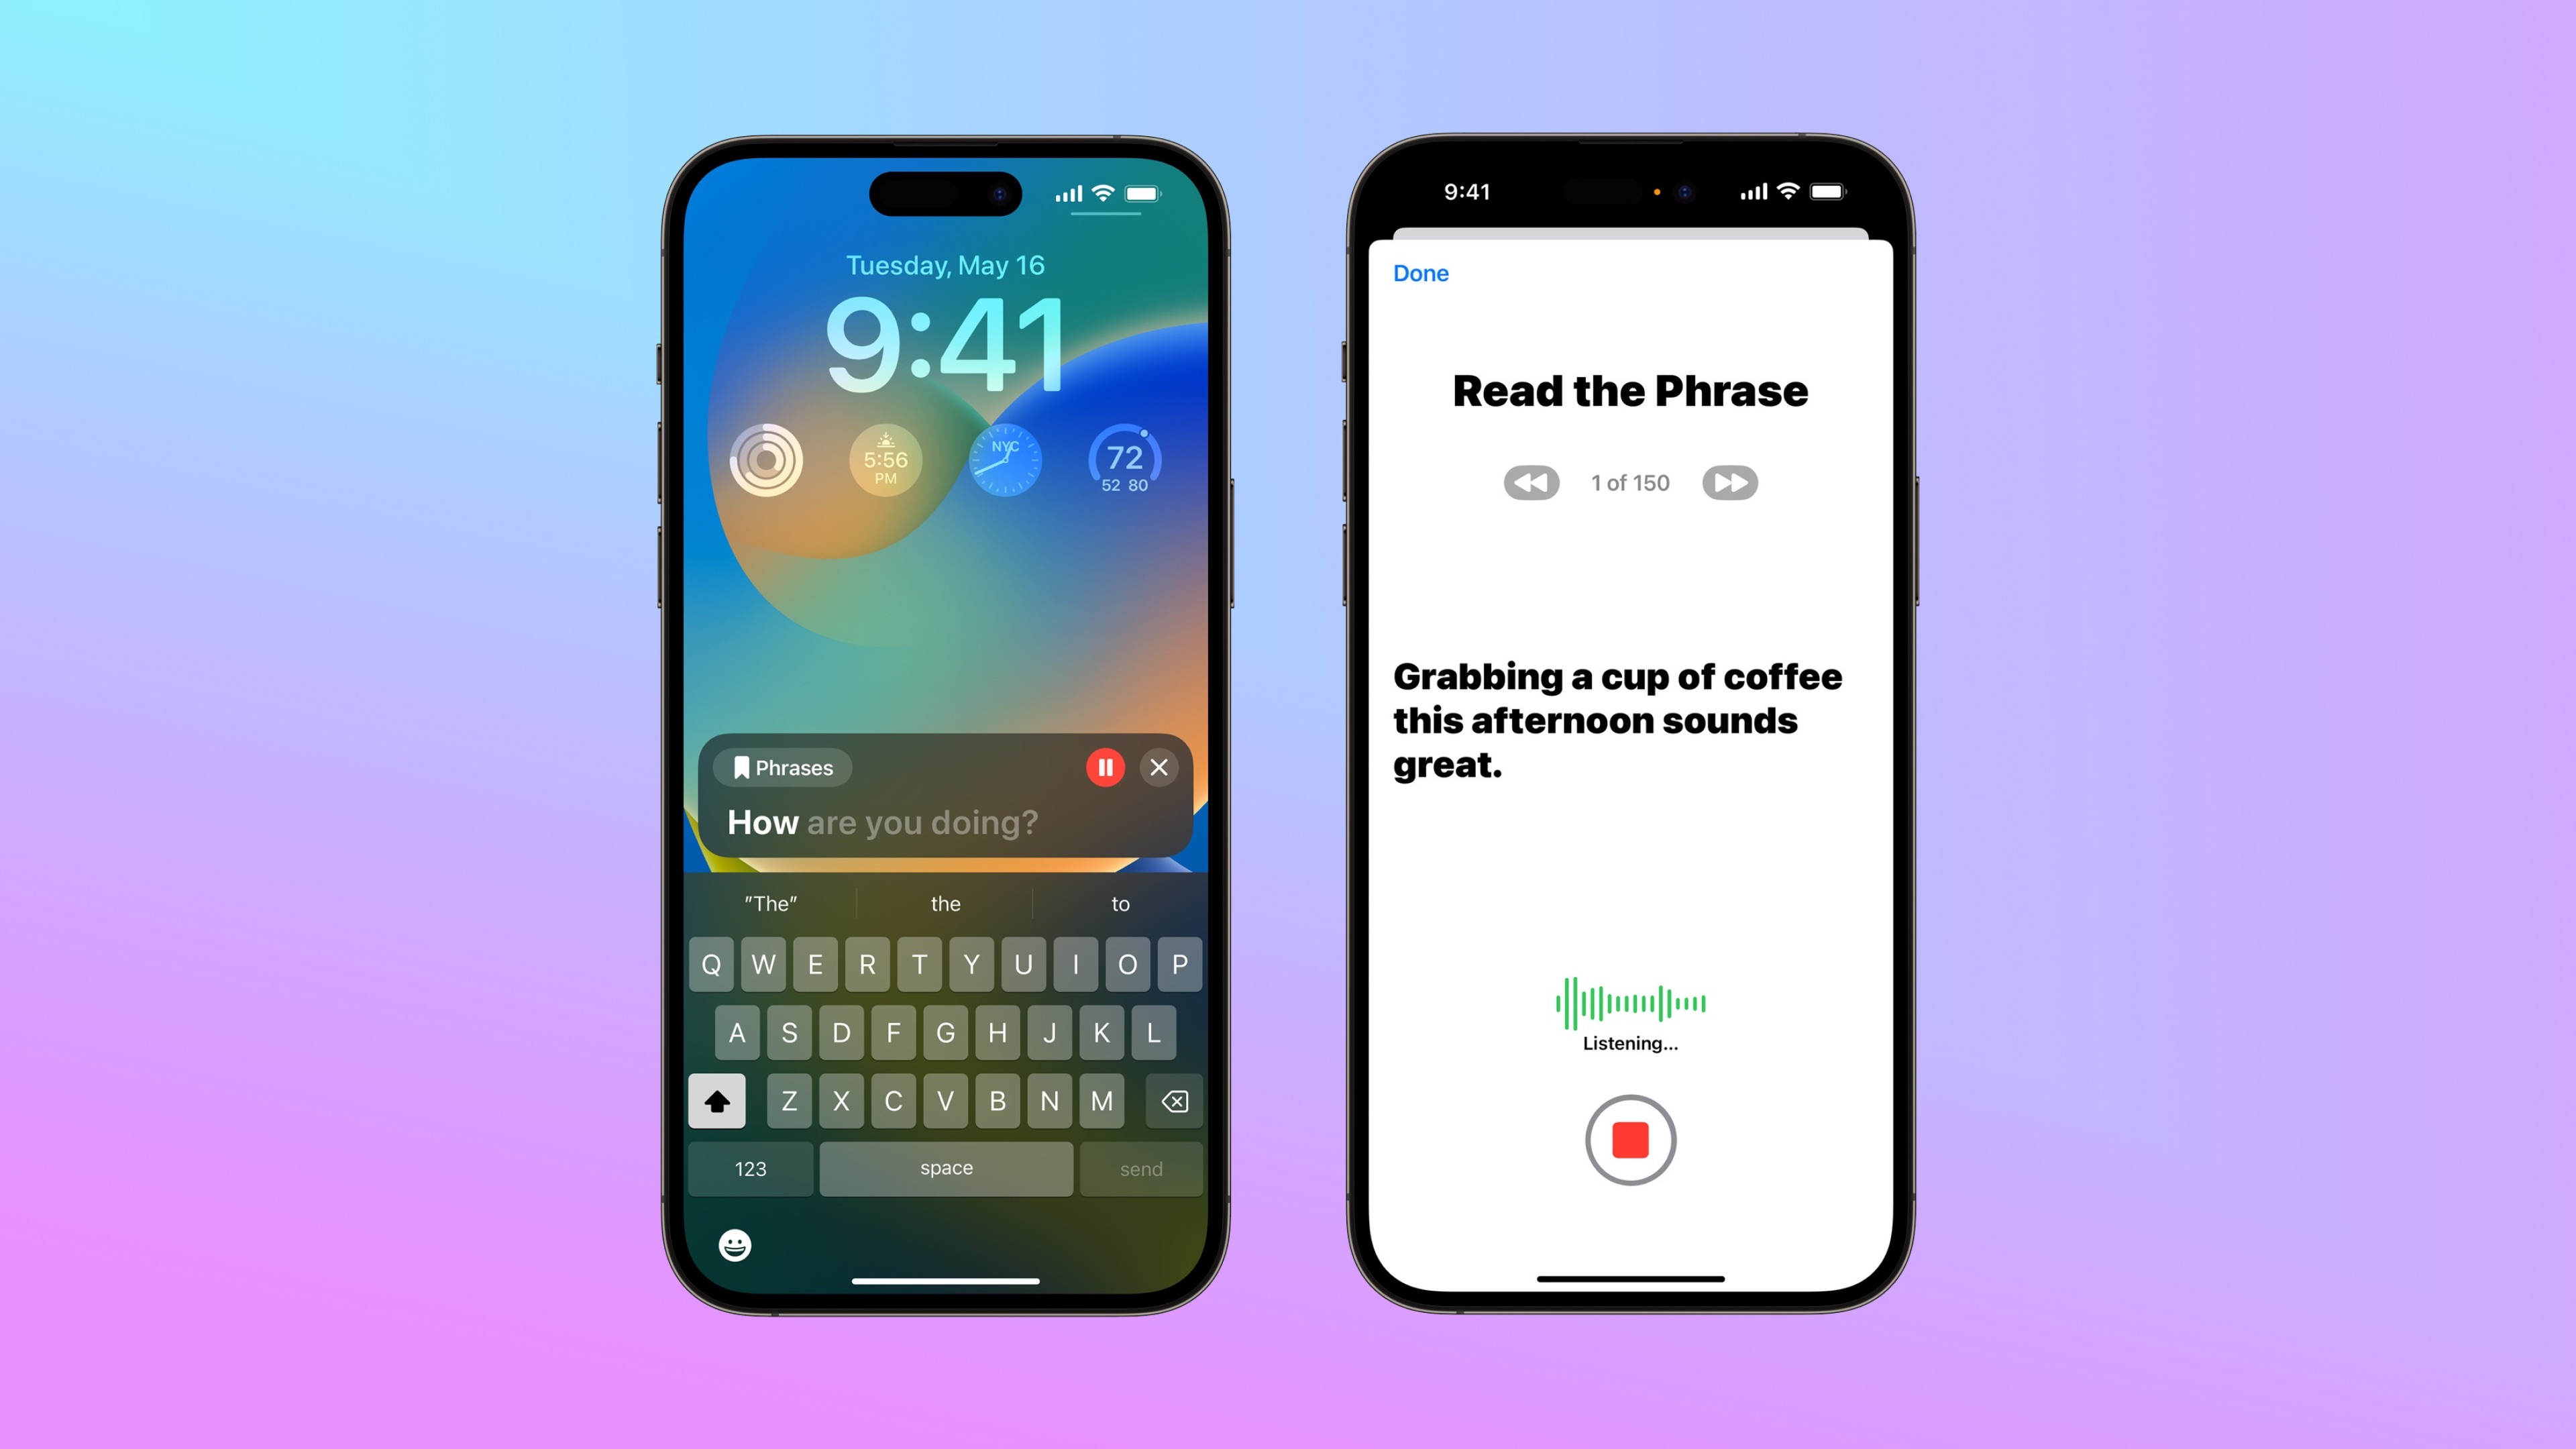 L’image représente deux iPhones qui montrent le processus de mise en place de la fonctionnalité de Live Speech & Personnal Voice (Parole en direct & voix personnelle) avec quelque cent-cinquante phrases à répéter.